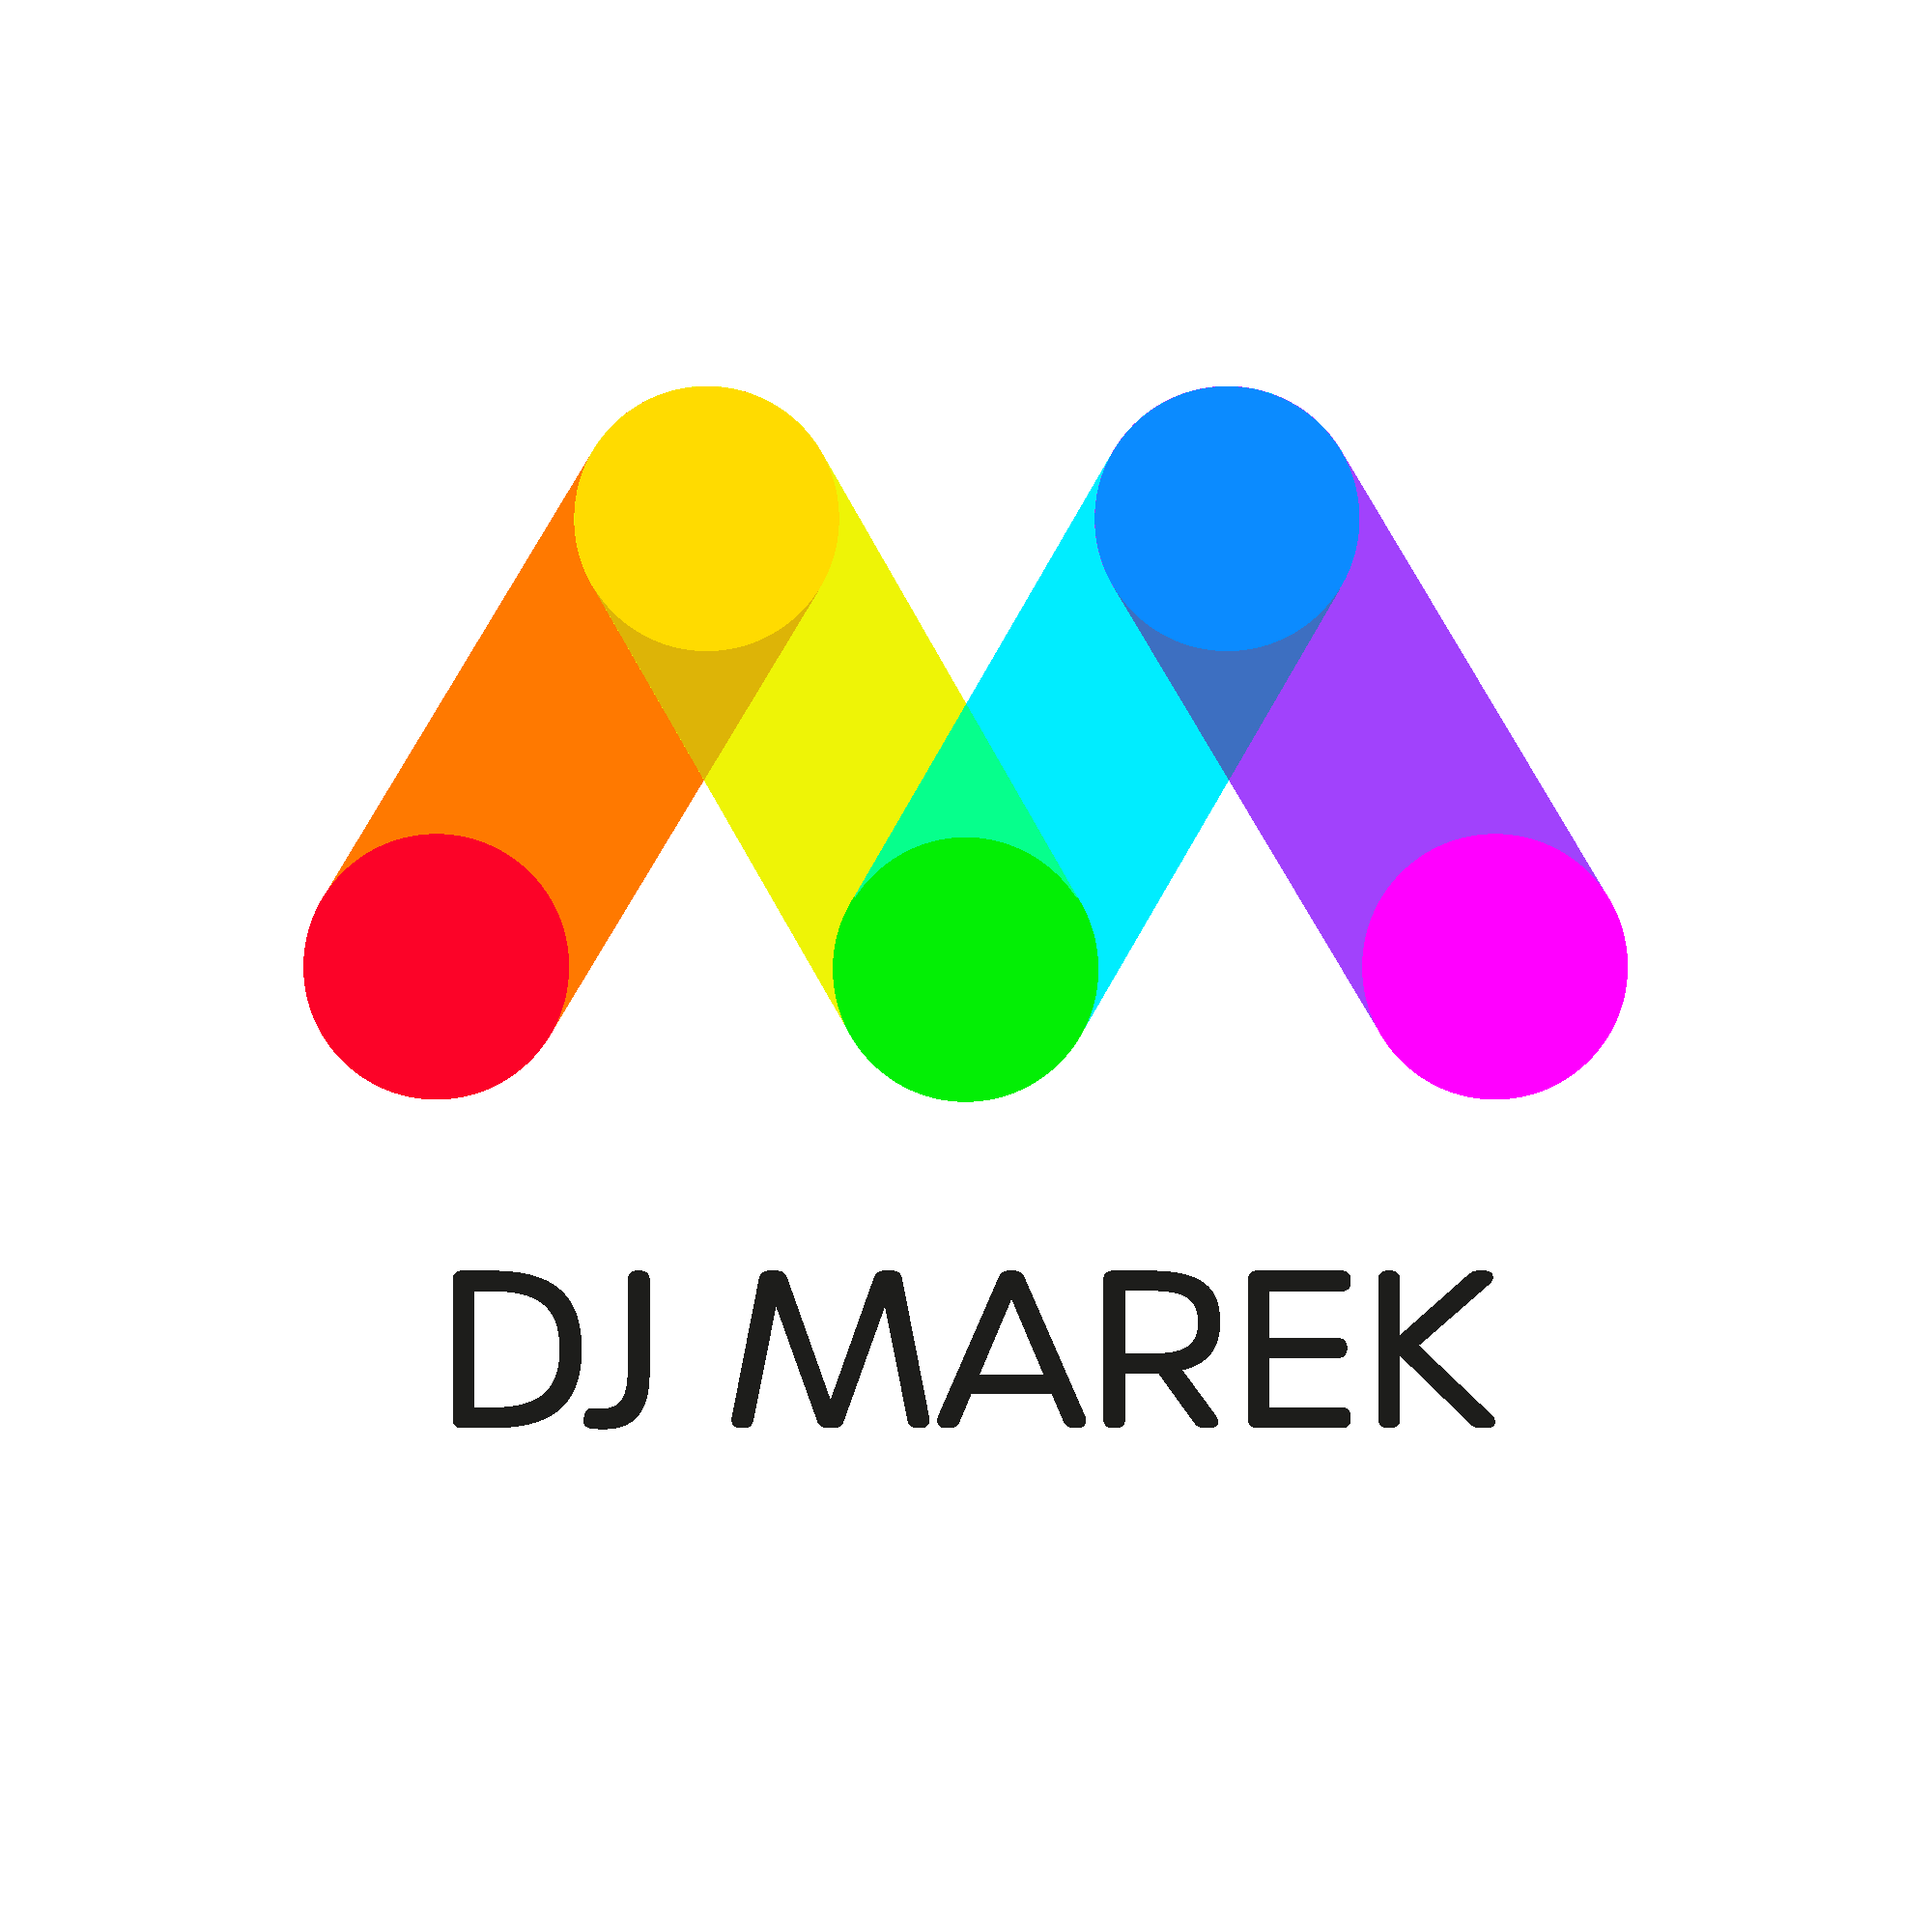 DJ Marek - Rapid City Wedding + Party DJ Service | DJs - The Knot